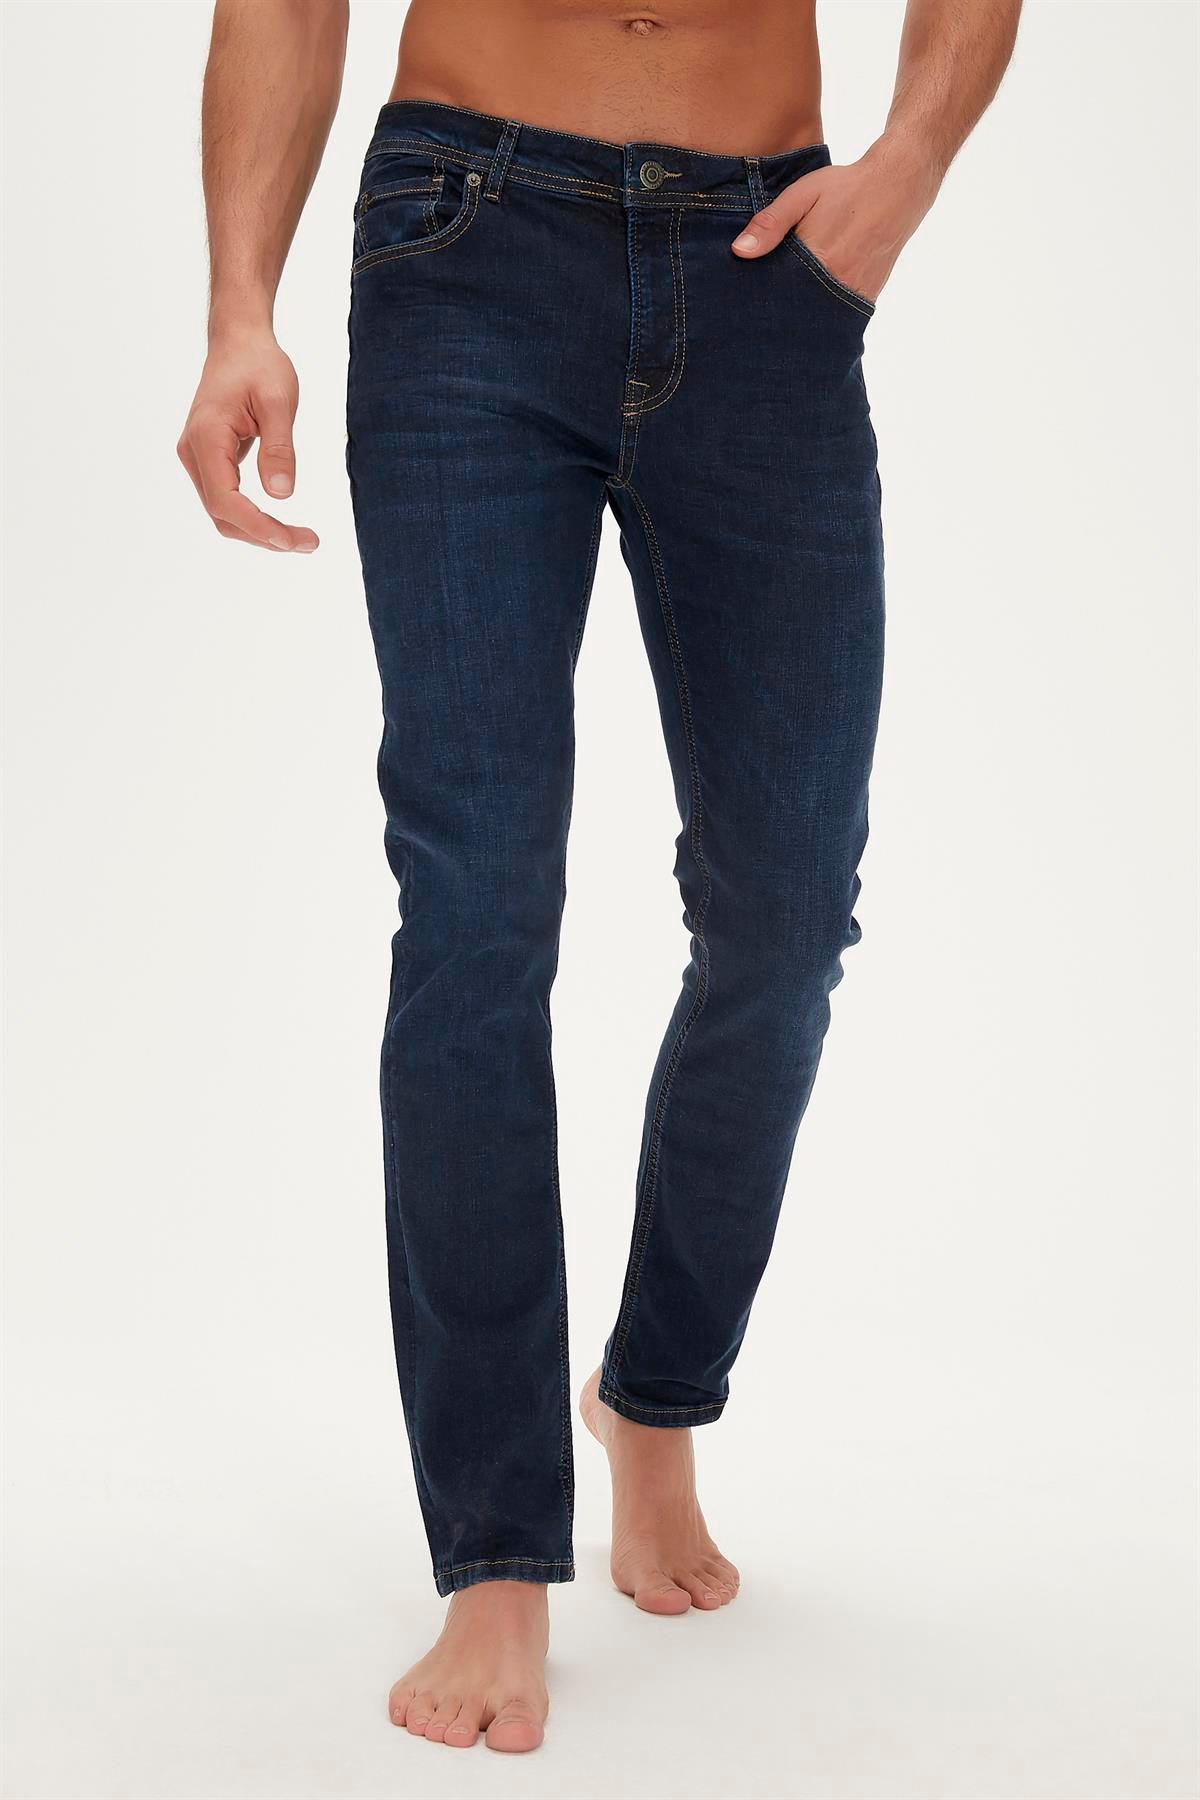 Franco Jeans Mavi Erkek Denim Pantolon |BAD BEAR